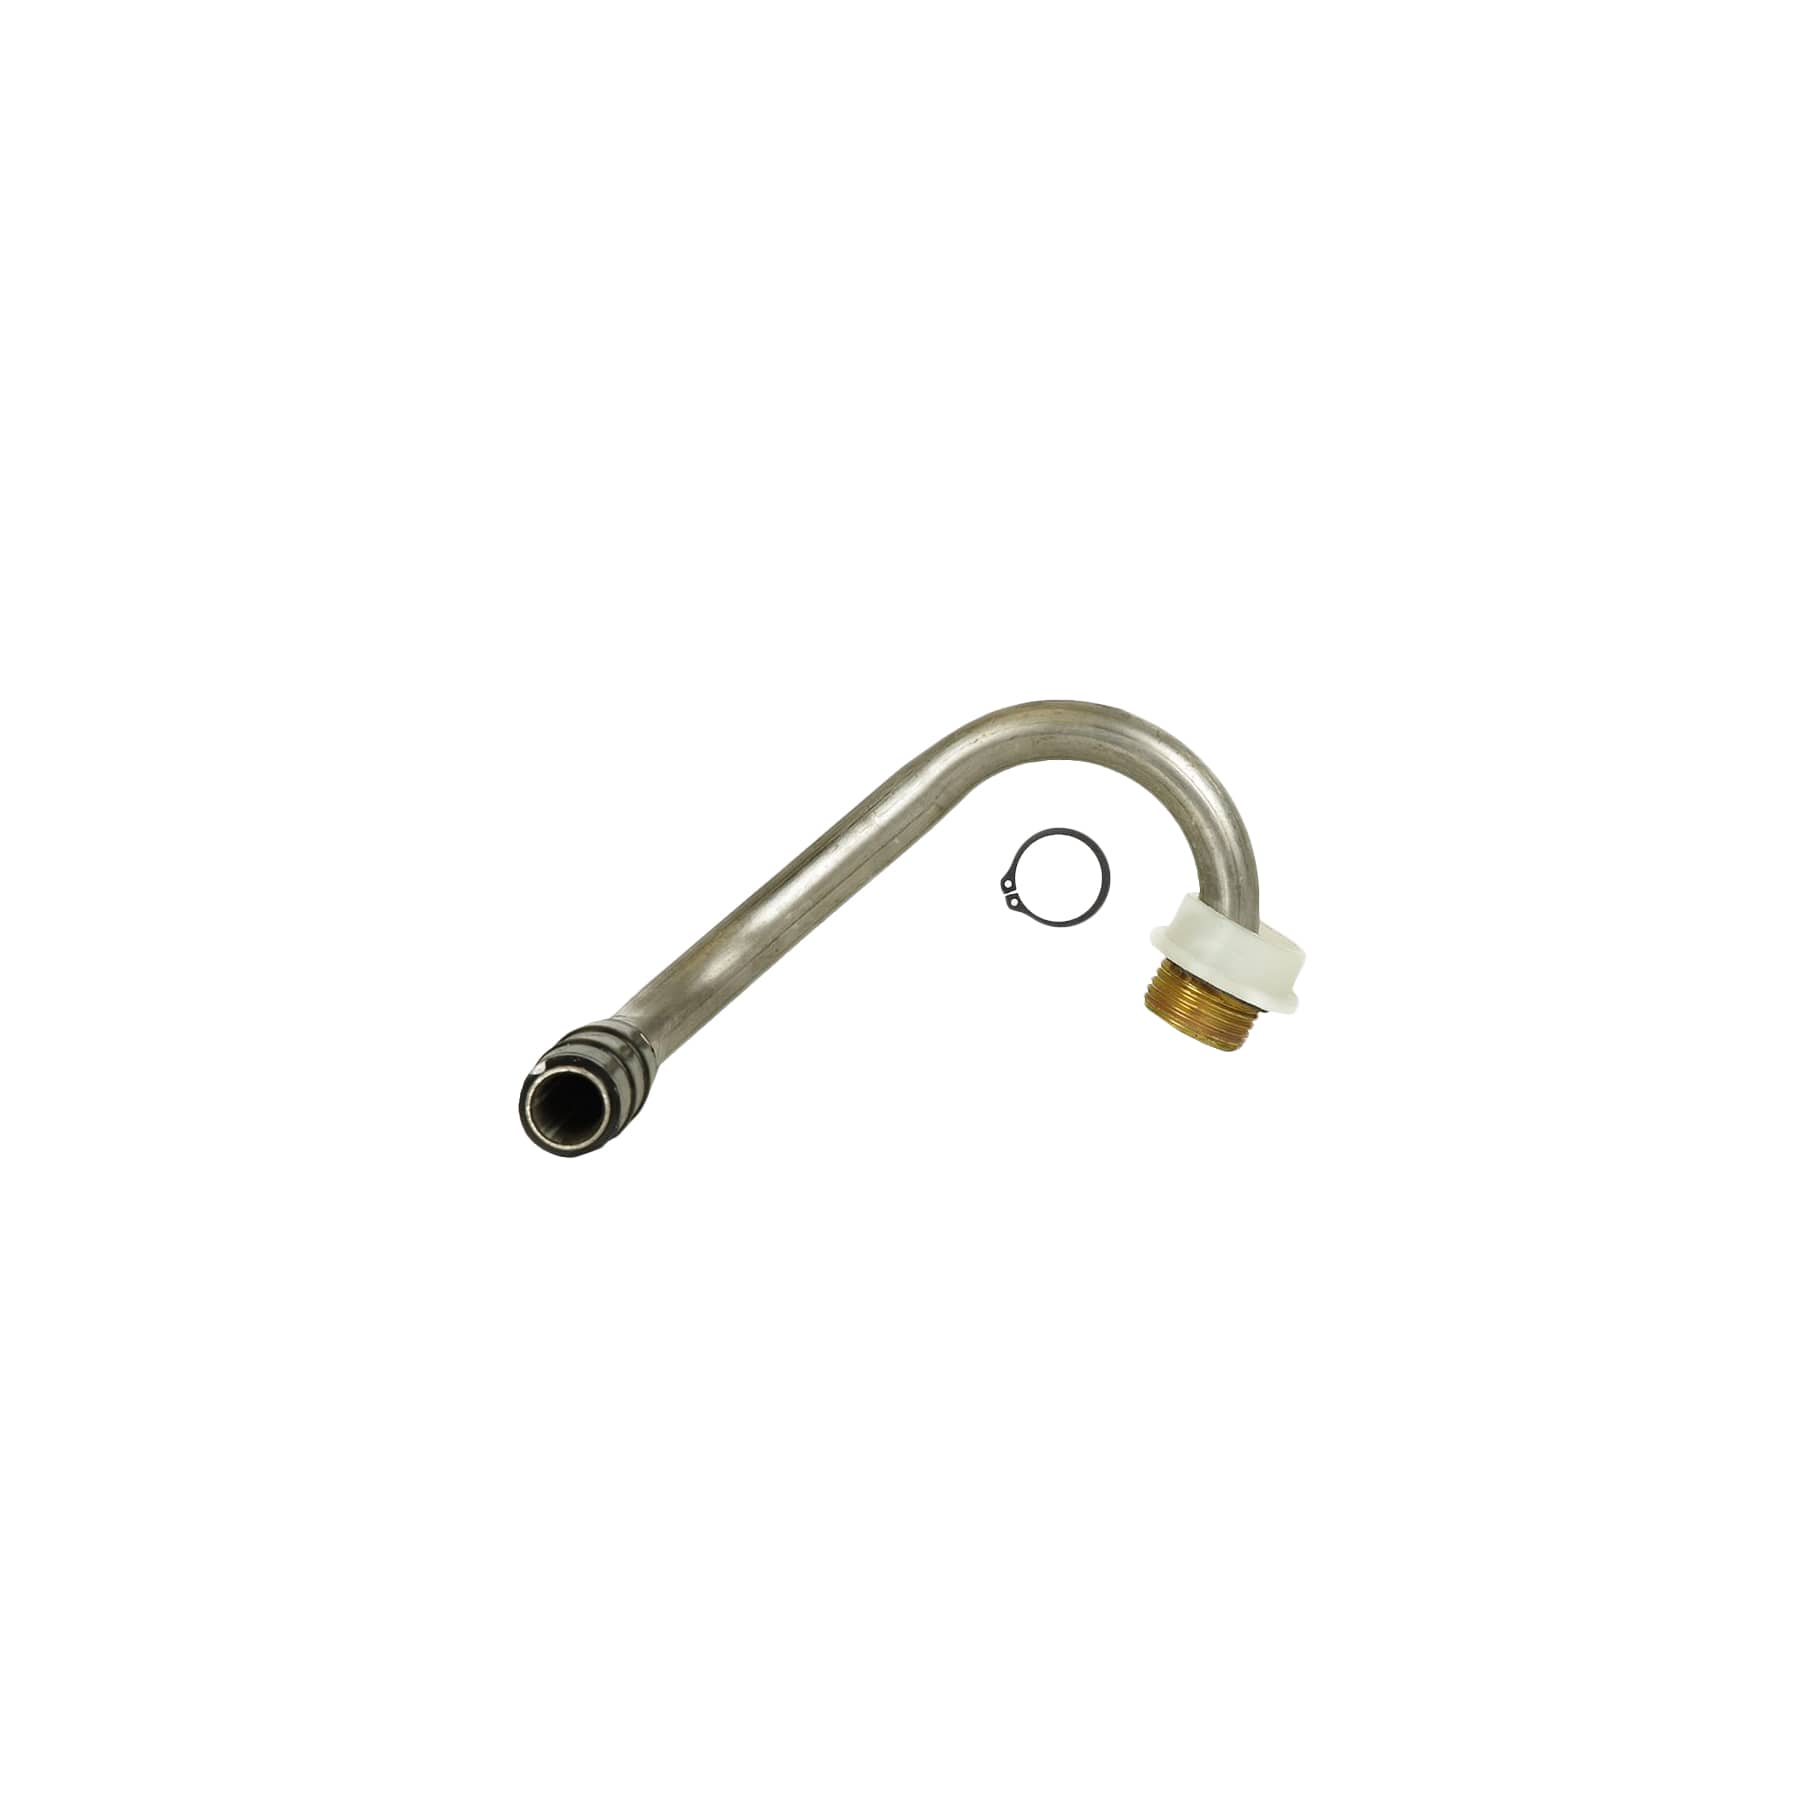 1*Garden Hose Adapter,Brass Replacement Part Swivel,Hose Reel